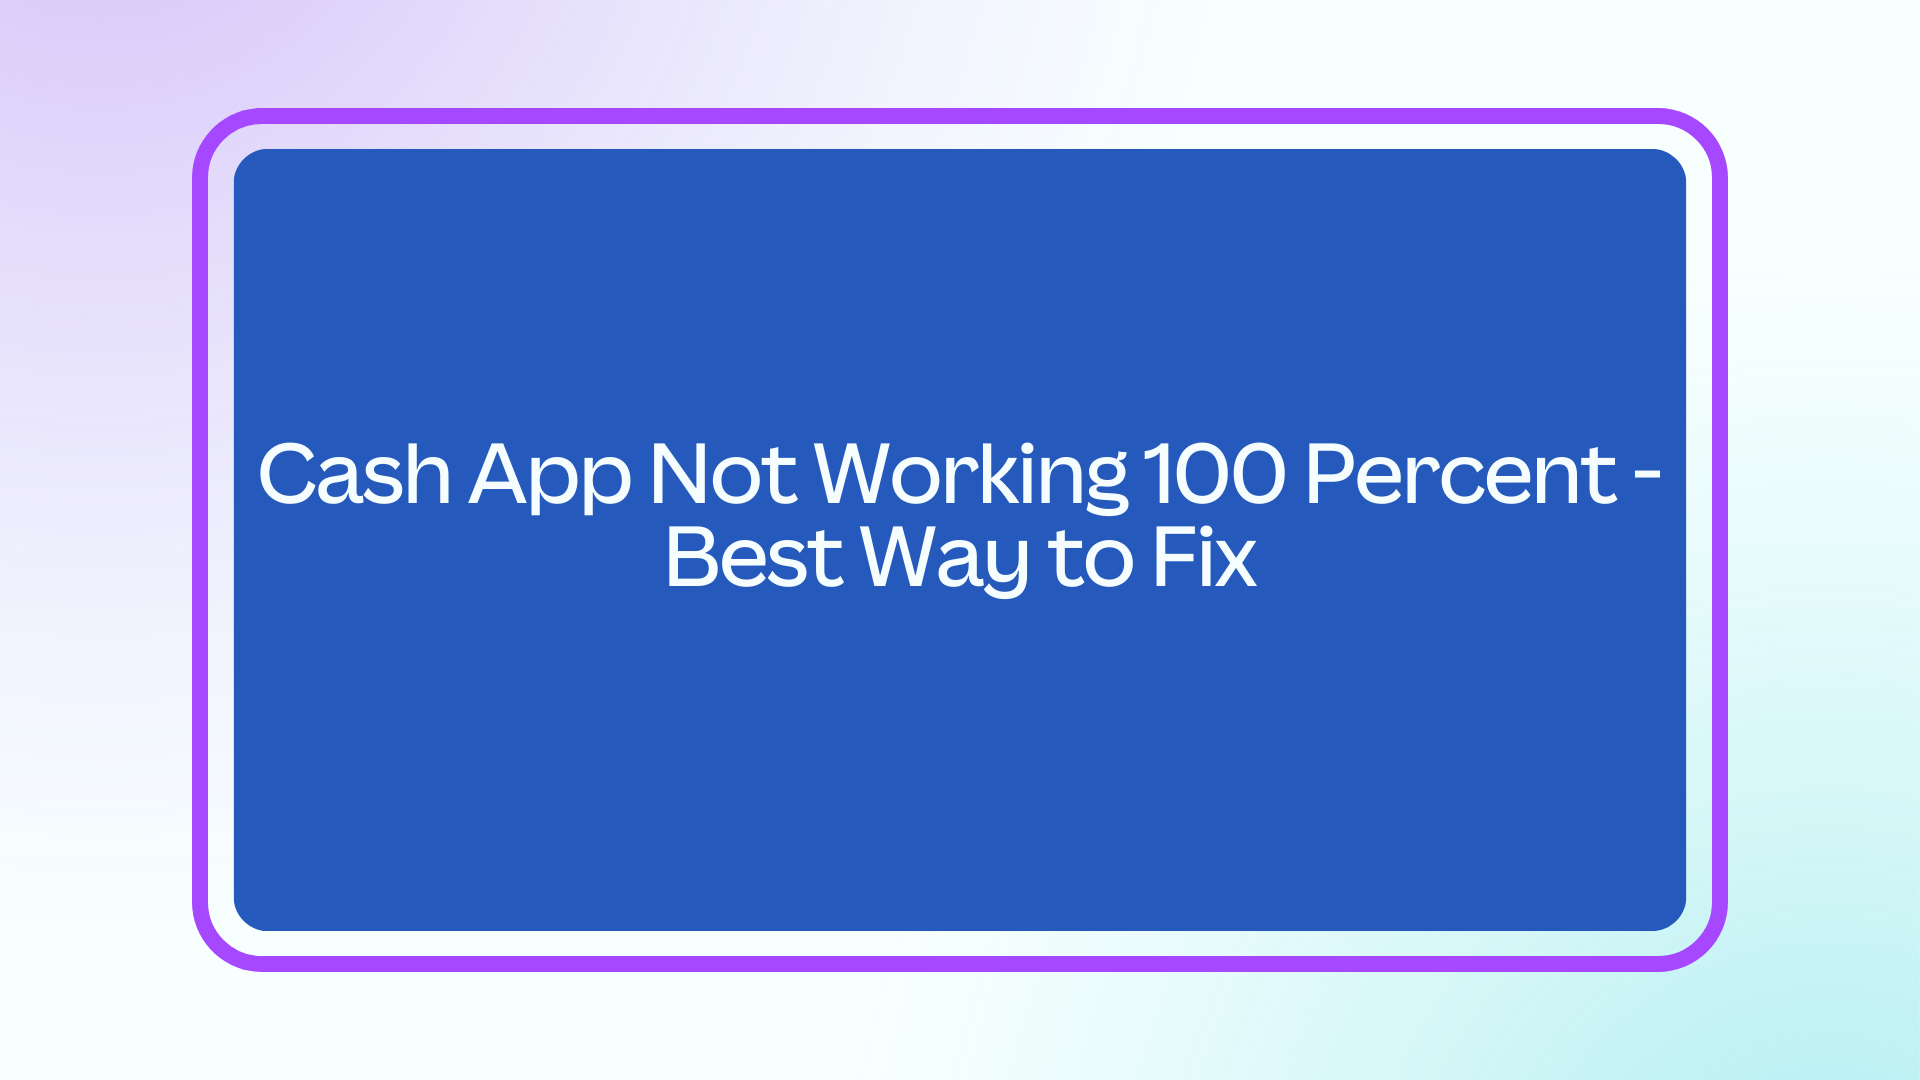 Cash App Not Working 100 Percent - Best Way to Fix